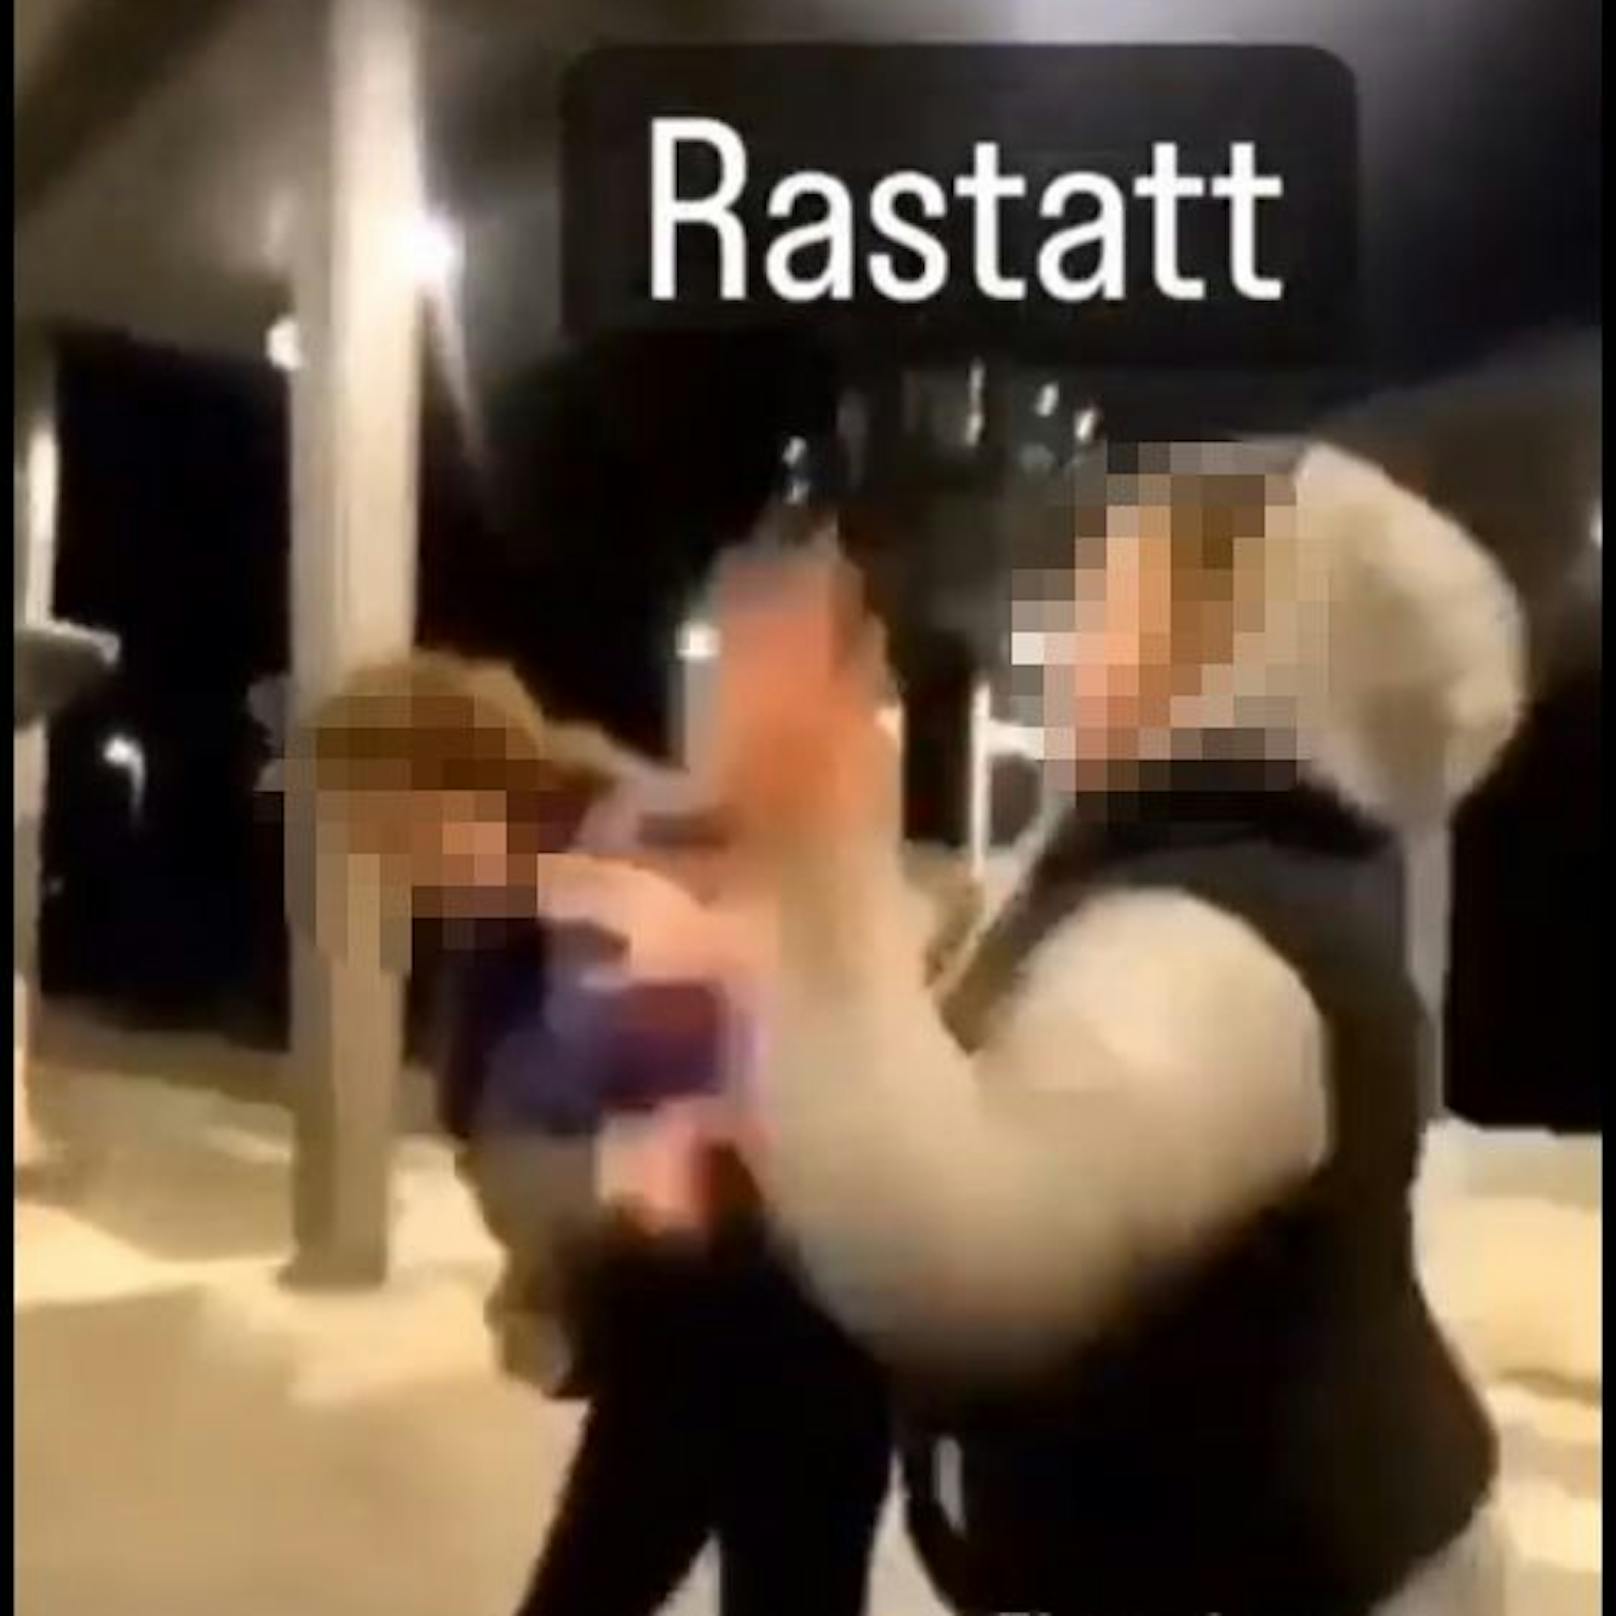 Zeugen filmten die Prügelattacke auf eine 14-Jährige am Bahnhof Rastatt in Baden-Württemberg. Die mutmaßlichen Schlägerinnen (13) sind amtsbekannt.